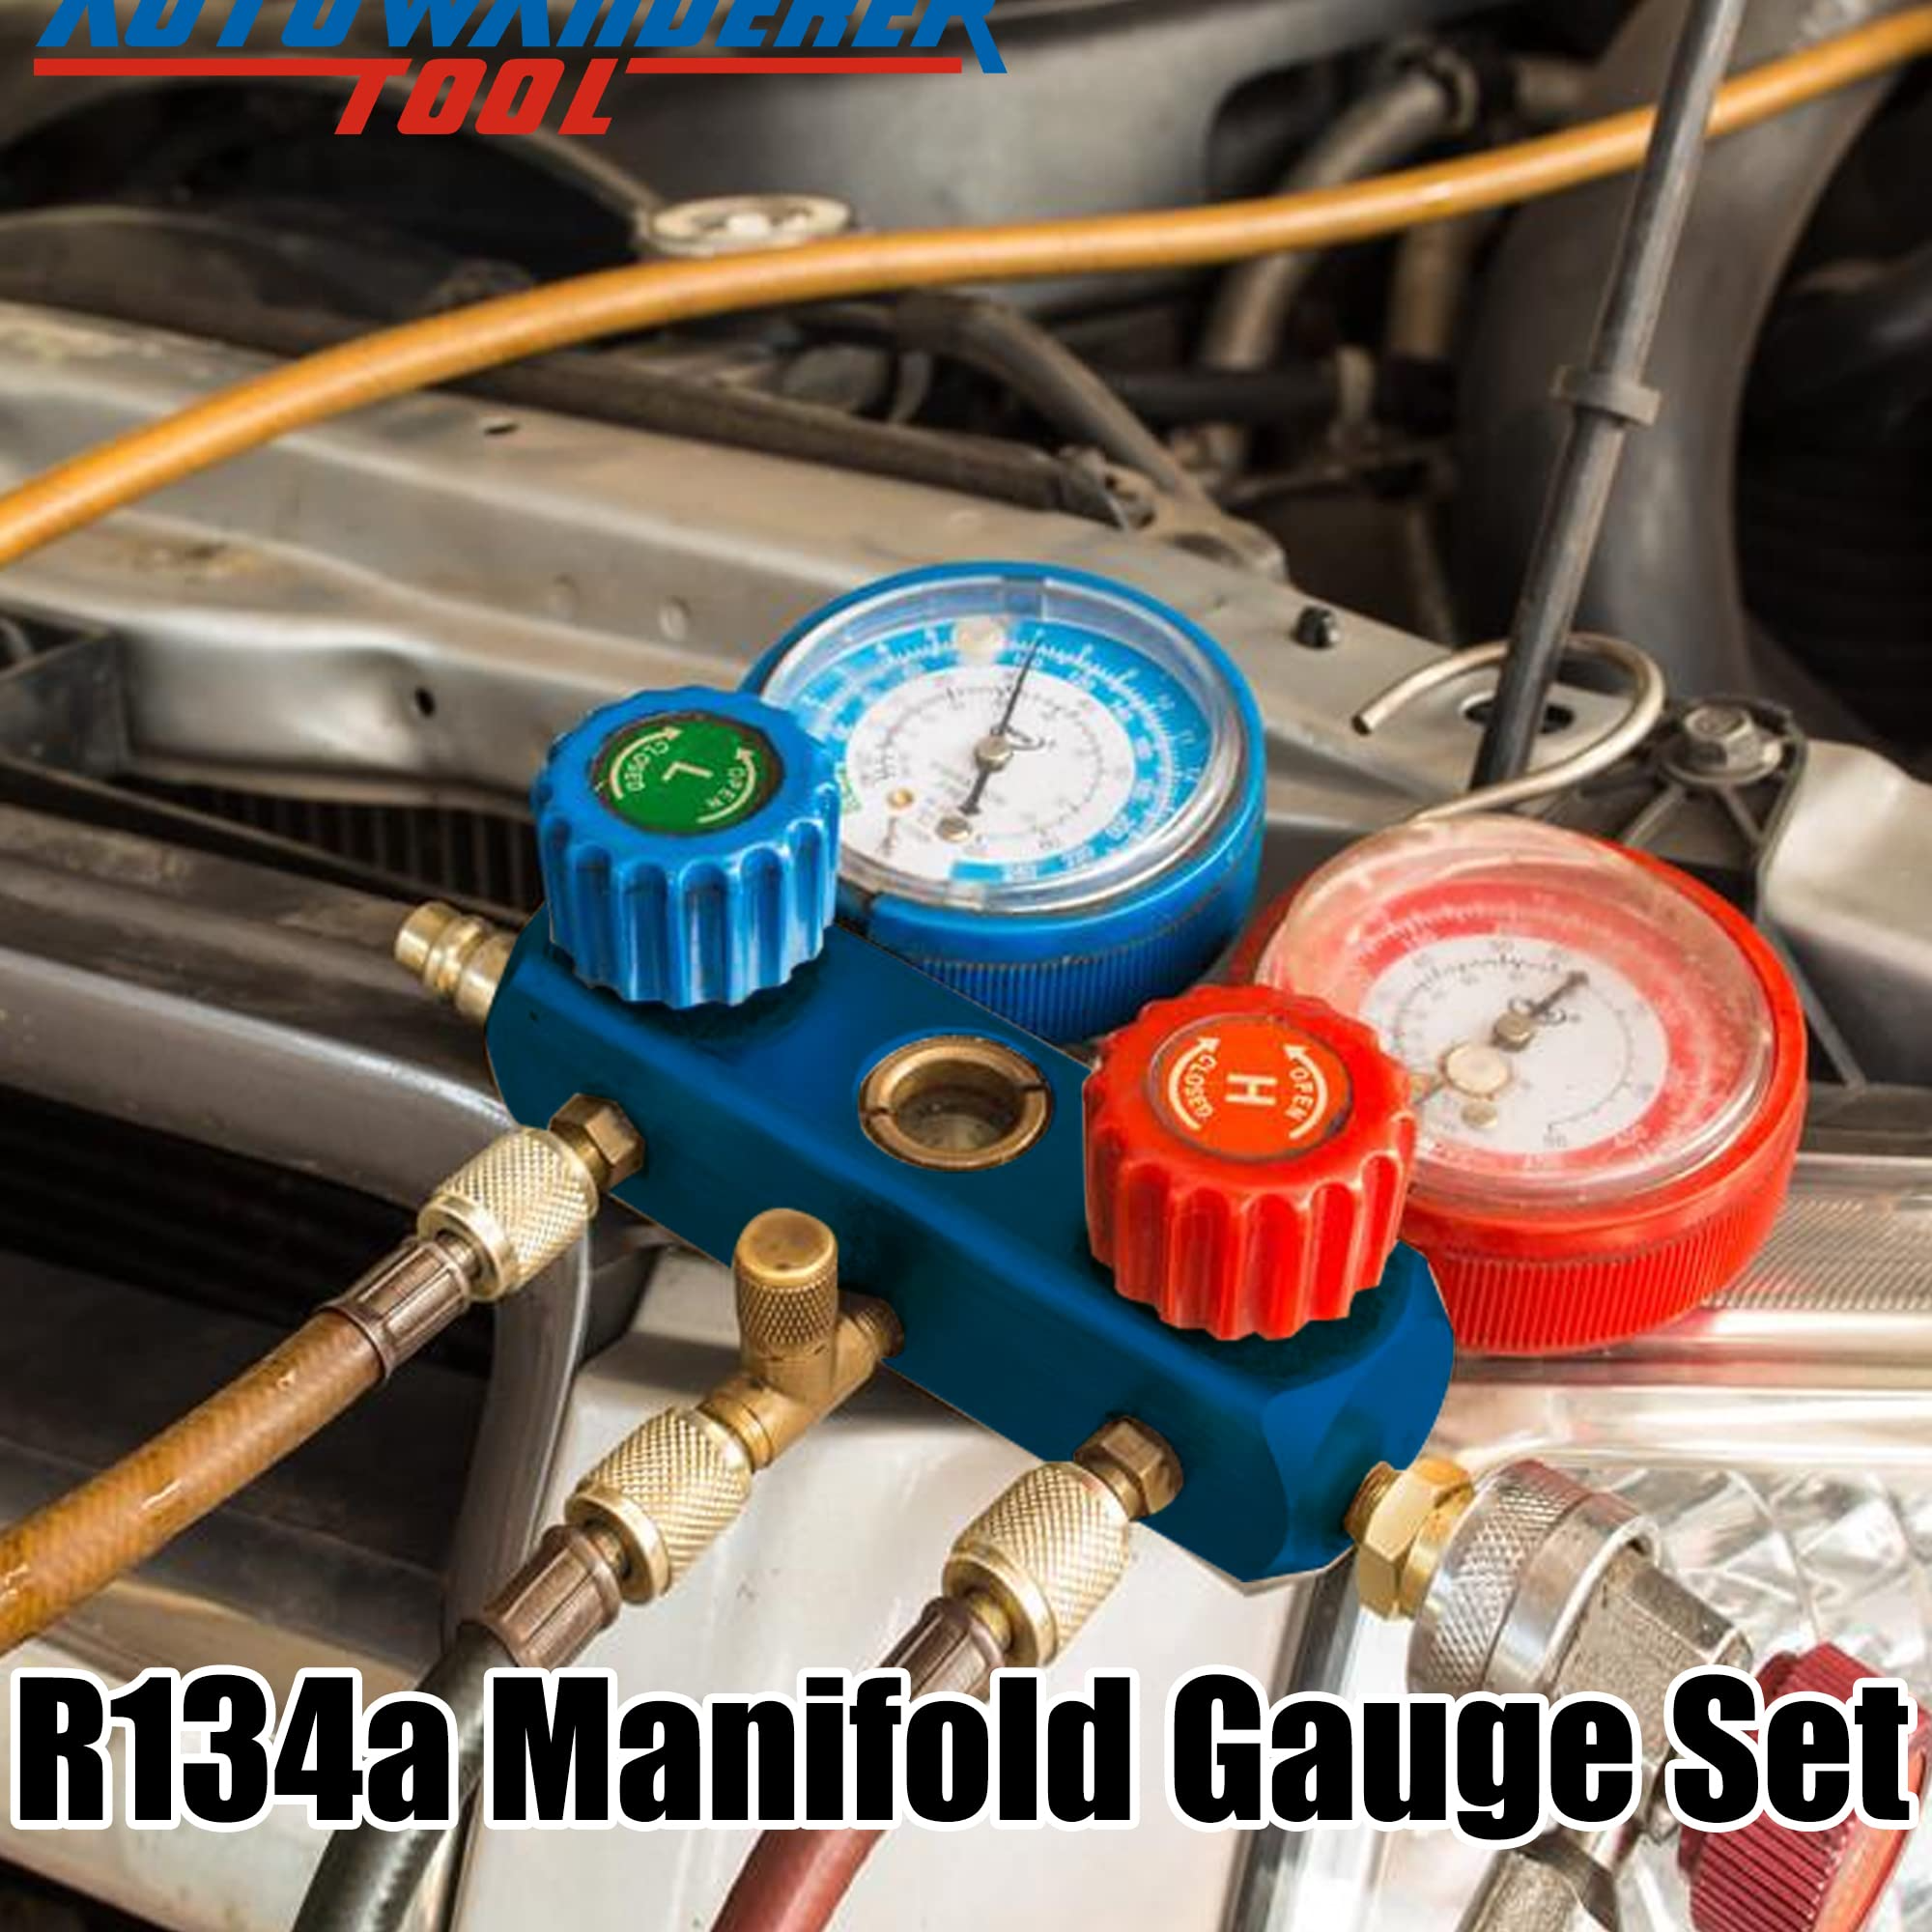 R1234yf Manifold Gauge Set, 3 Way Car Air Conditioning 1234yf